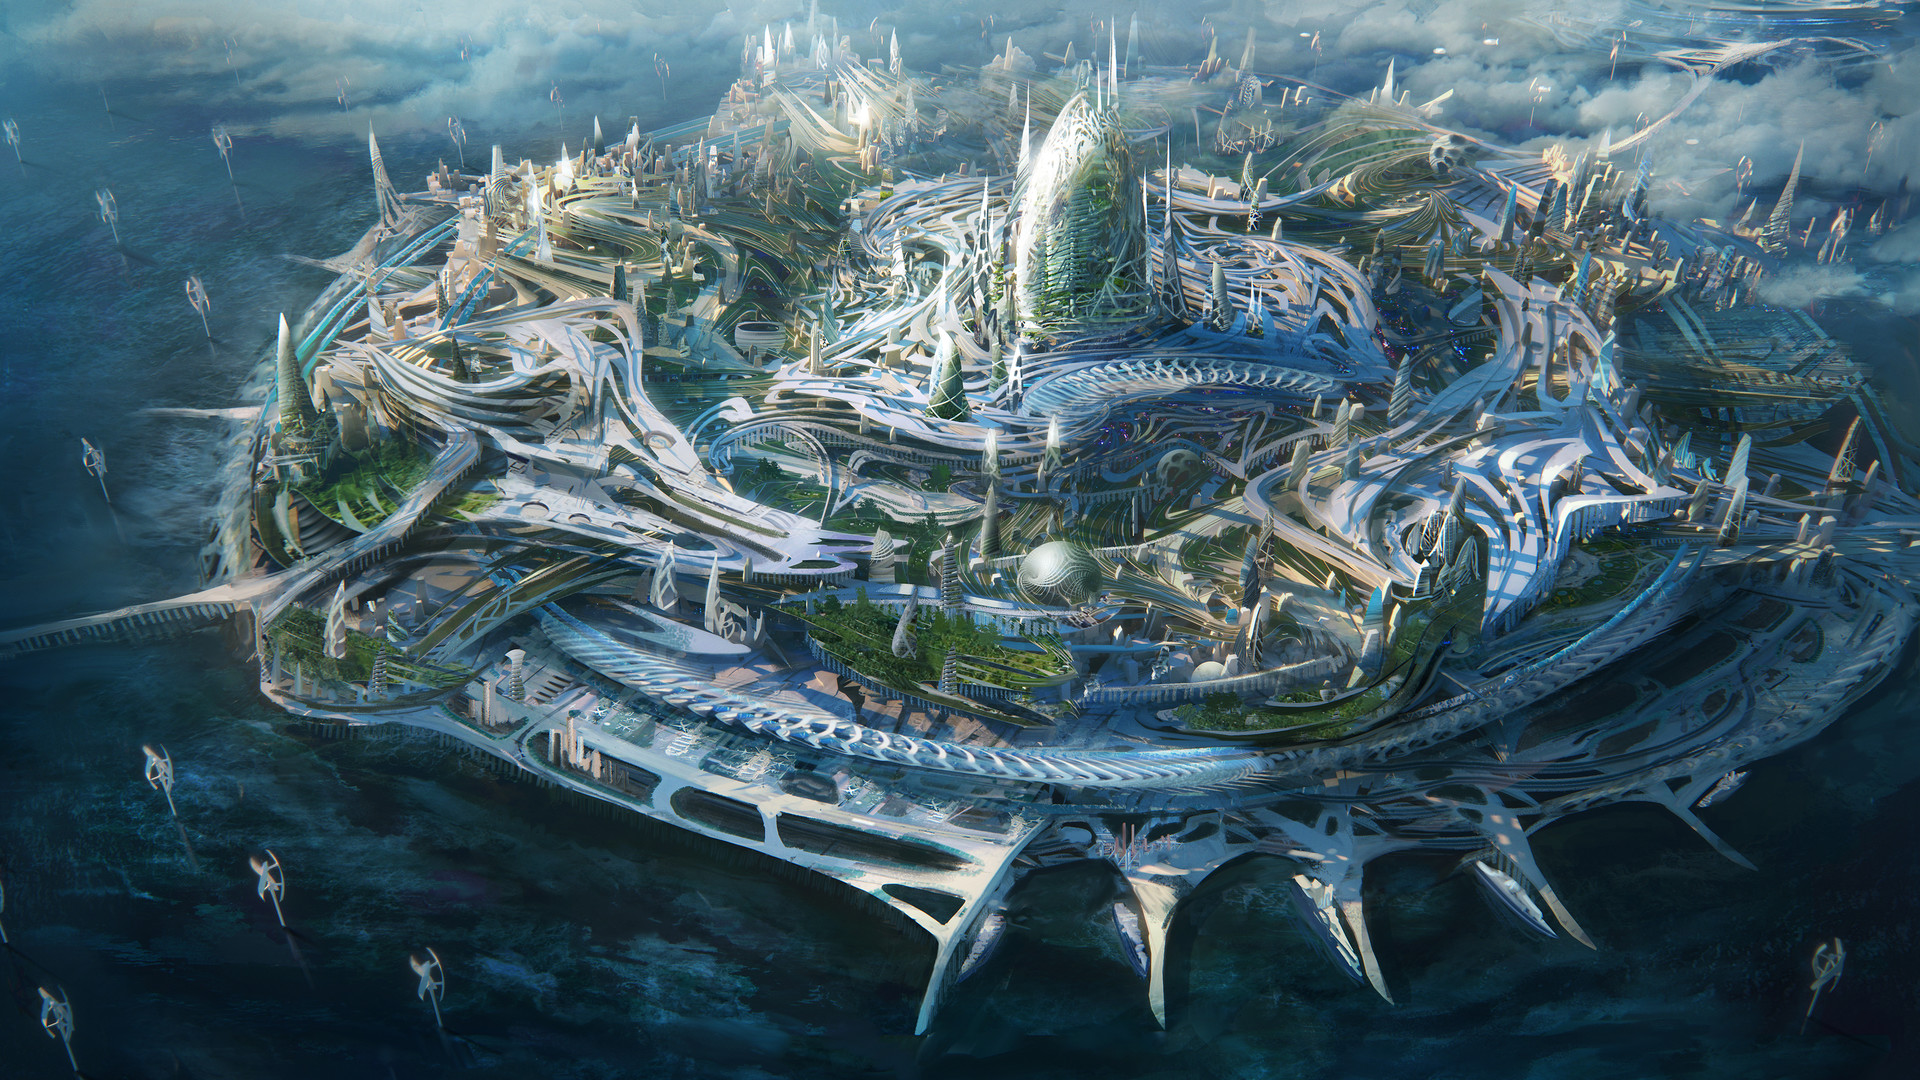 Traffic Futuristic City Sci Fi Concept Art Fantasy Landscape Vrogue